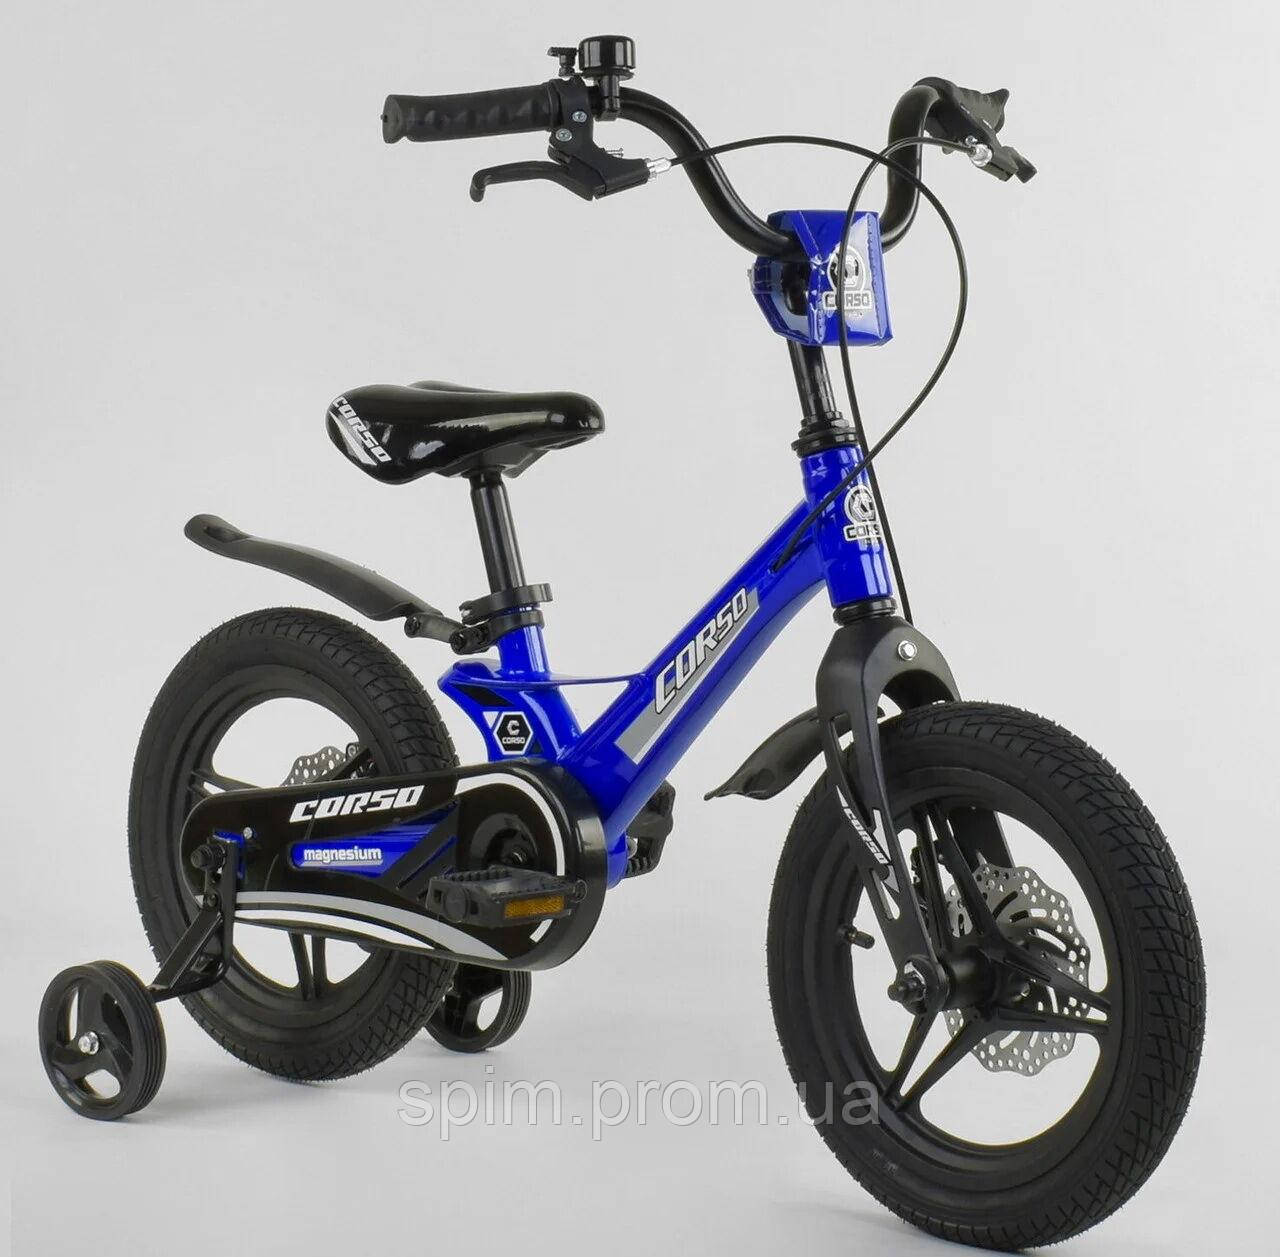 

Детский двухколёсный велосипед 14" с магниевой рамой литыми дисками дисковые тормоза Corso MG-85328 синий